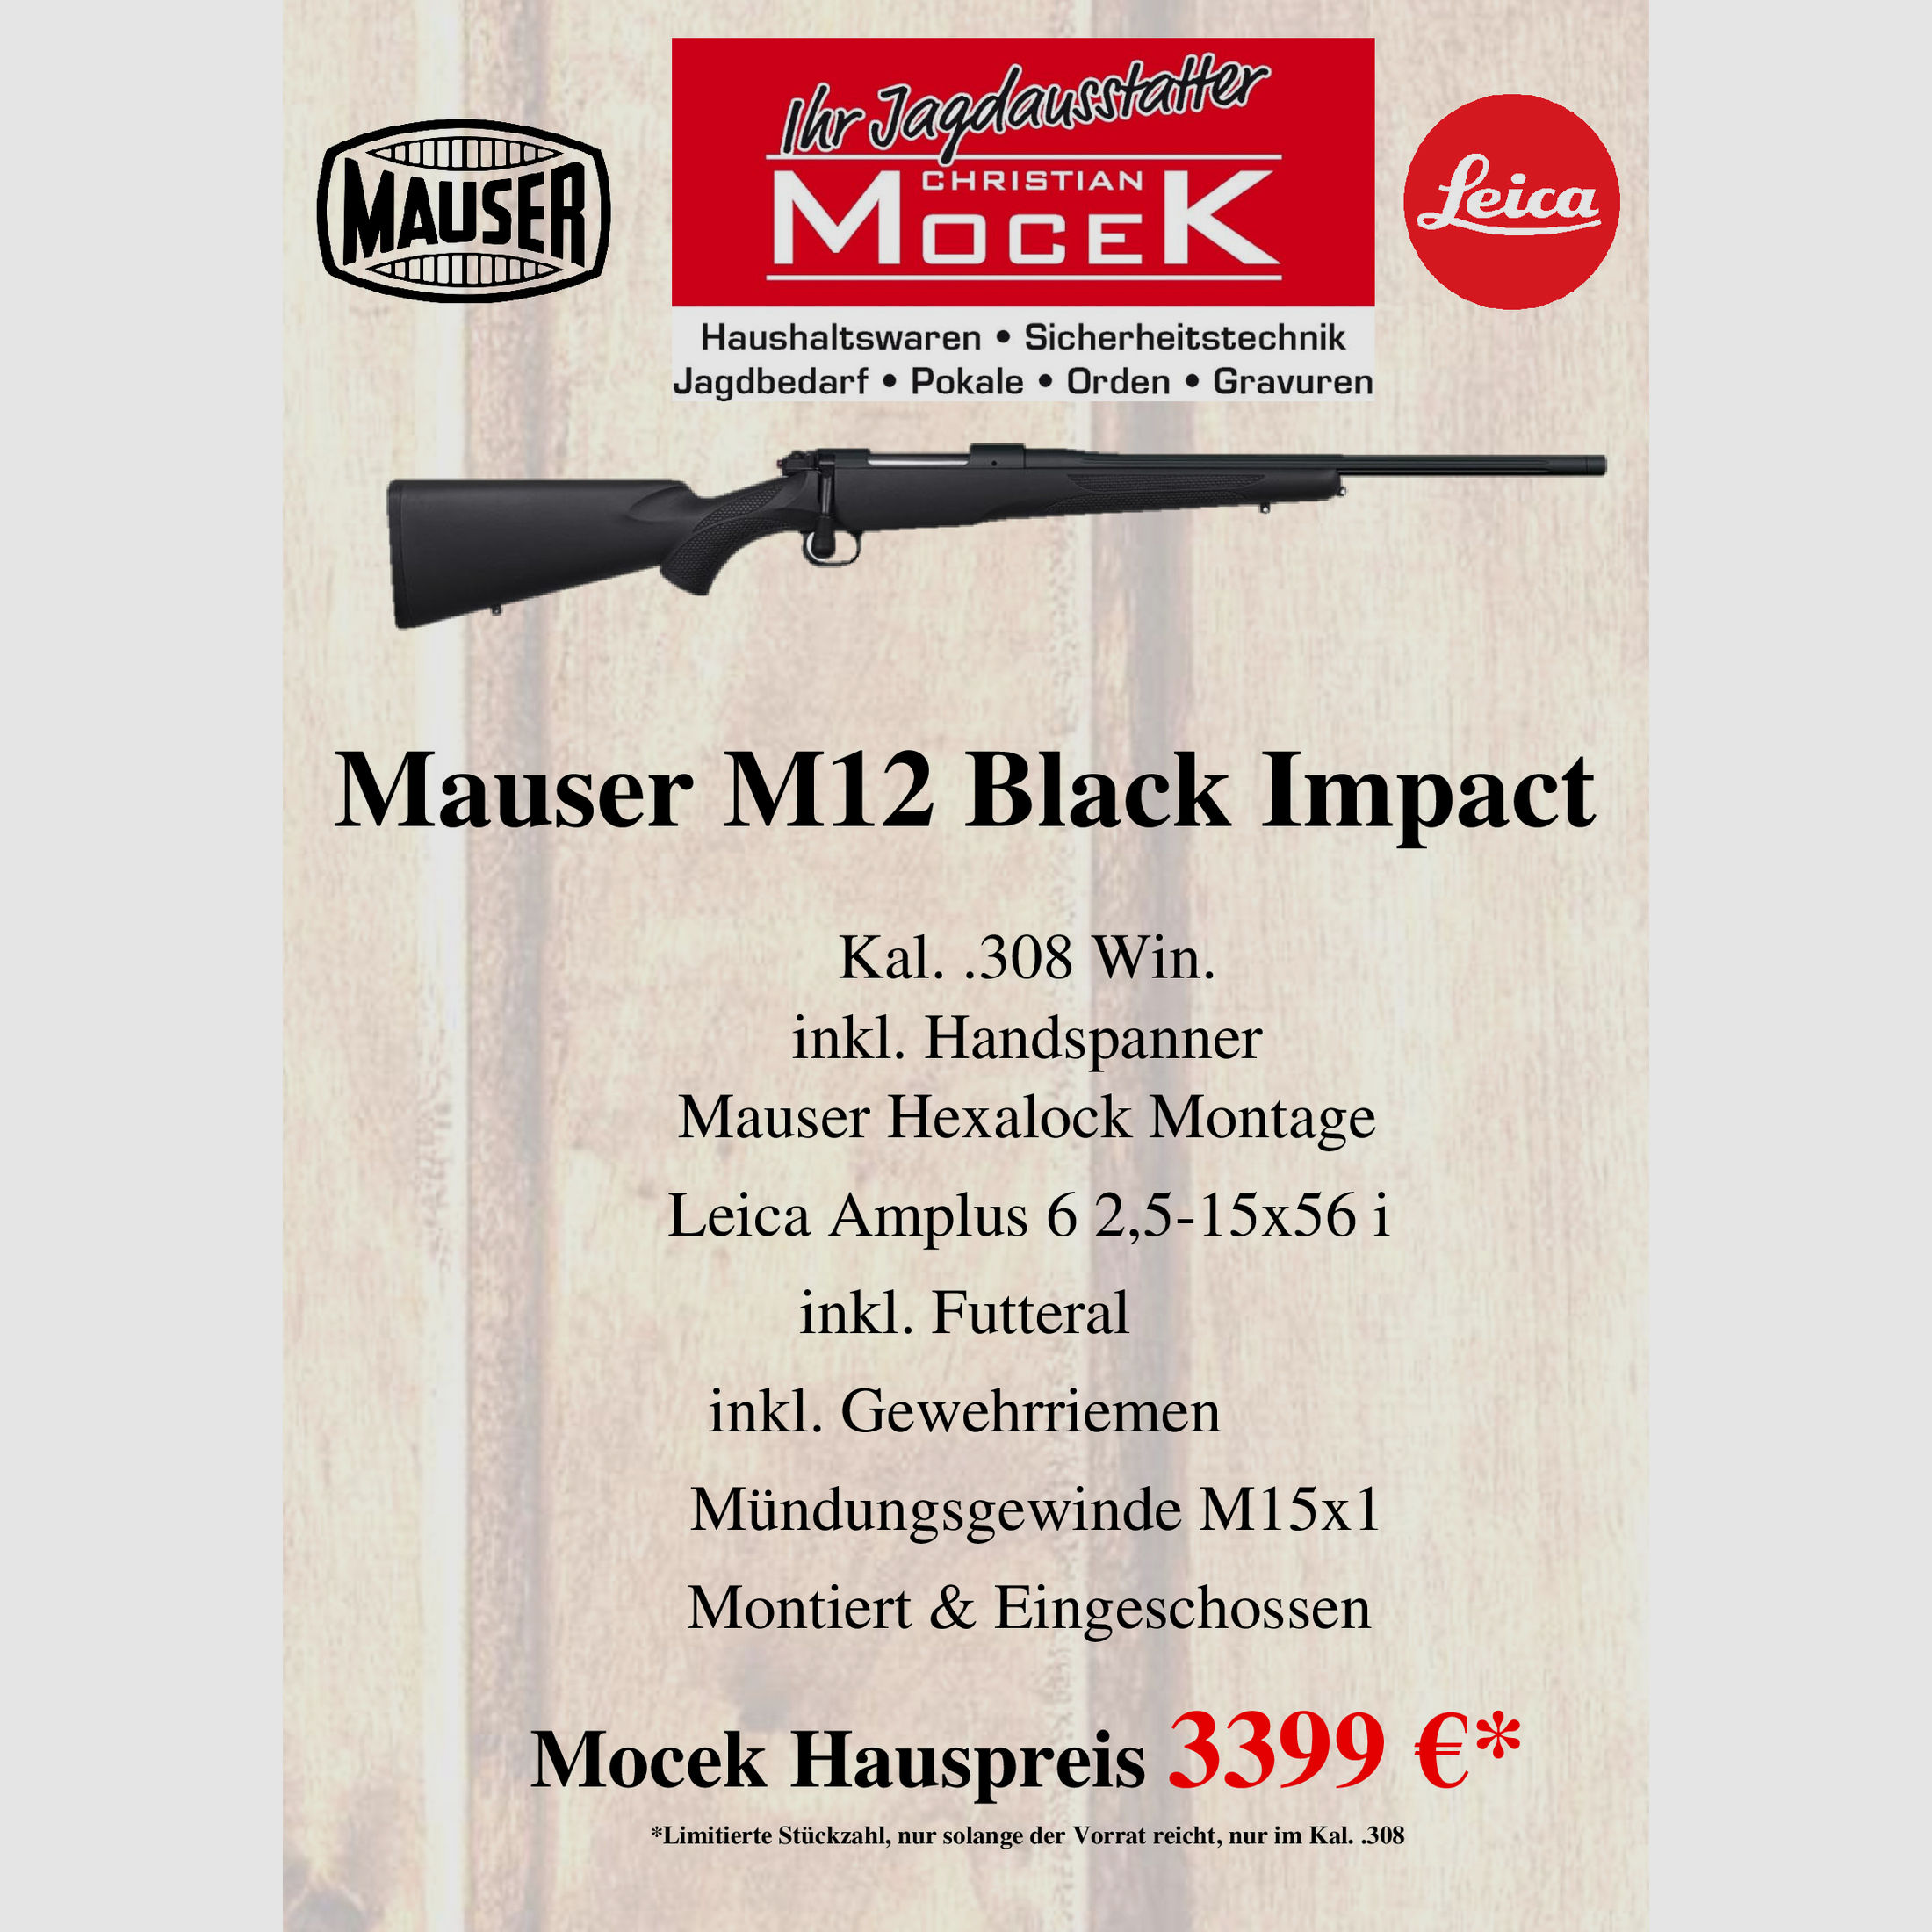 Mauser M12 Black Impact, mit Leica Amplus 6 2,5-15x56 i